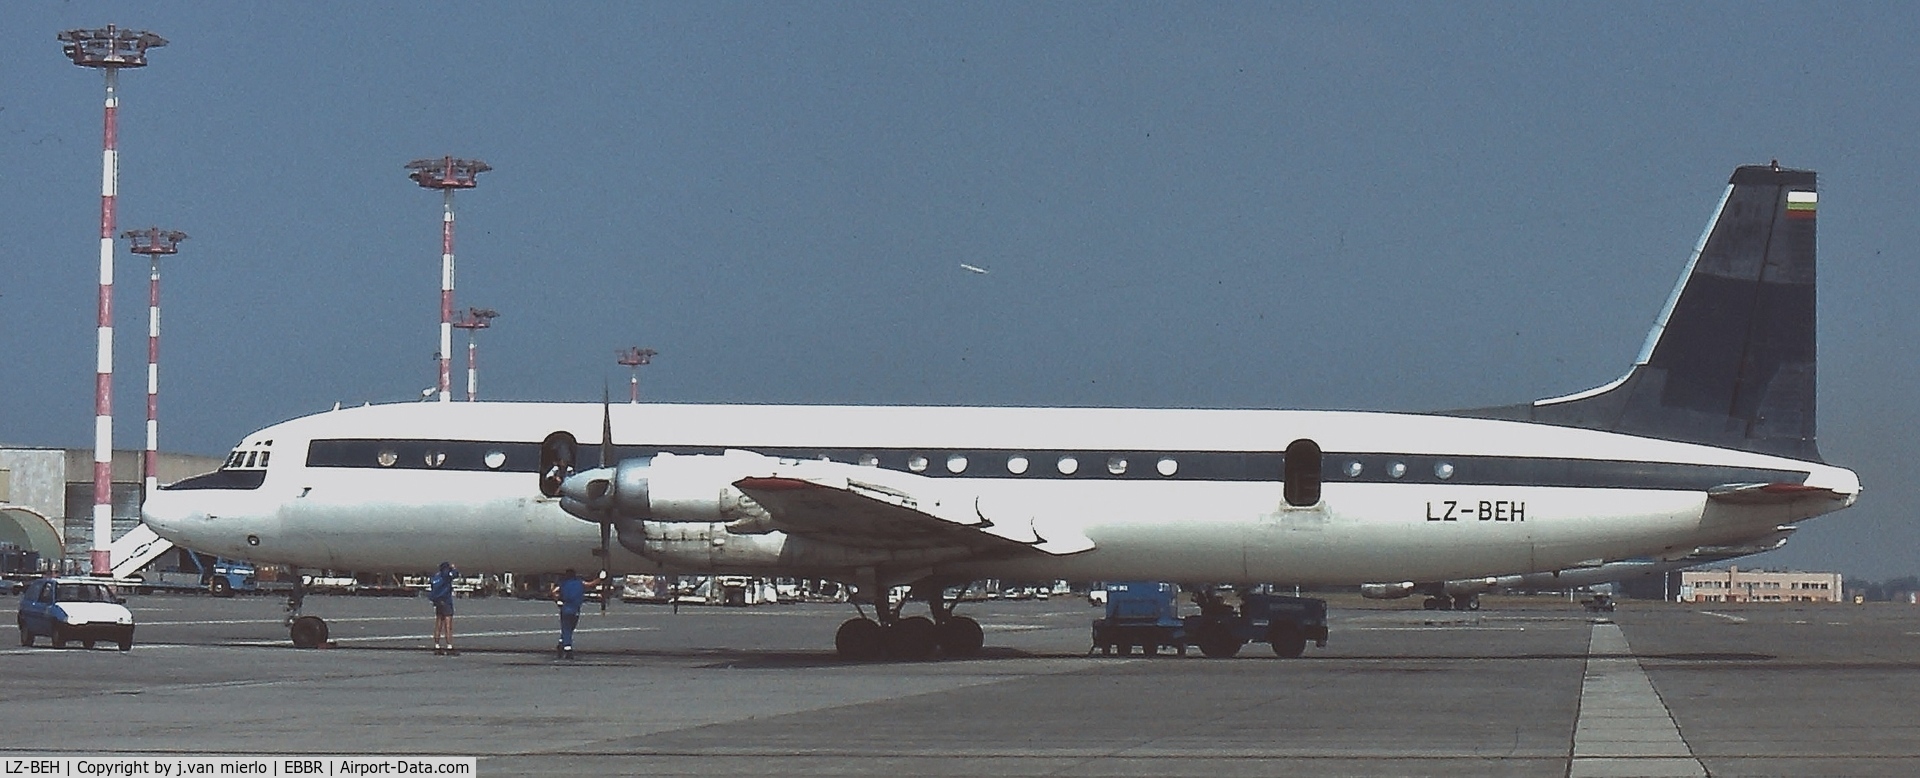 LZ-BEH, 1966 Ilyushin Il-18Gr C/N 186008905, Brussels, BRUCARGO